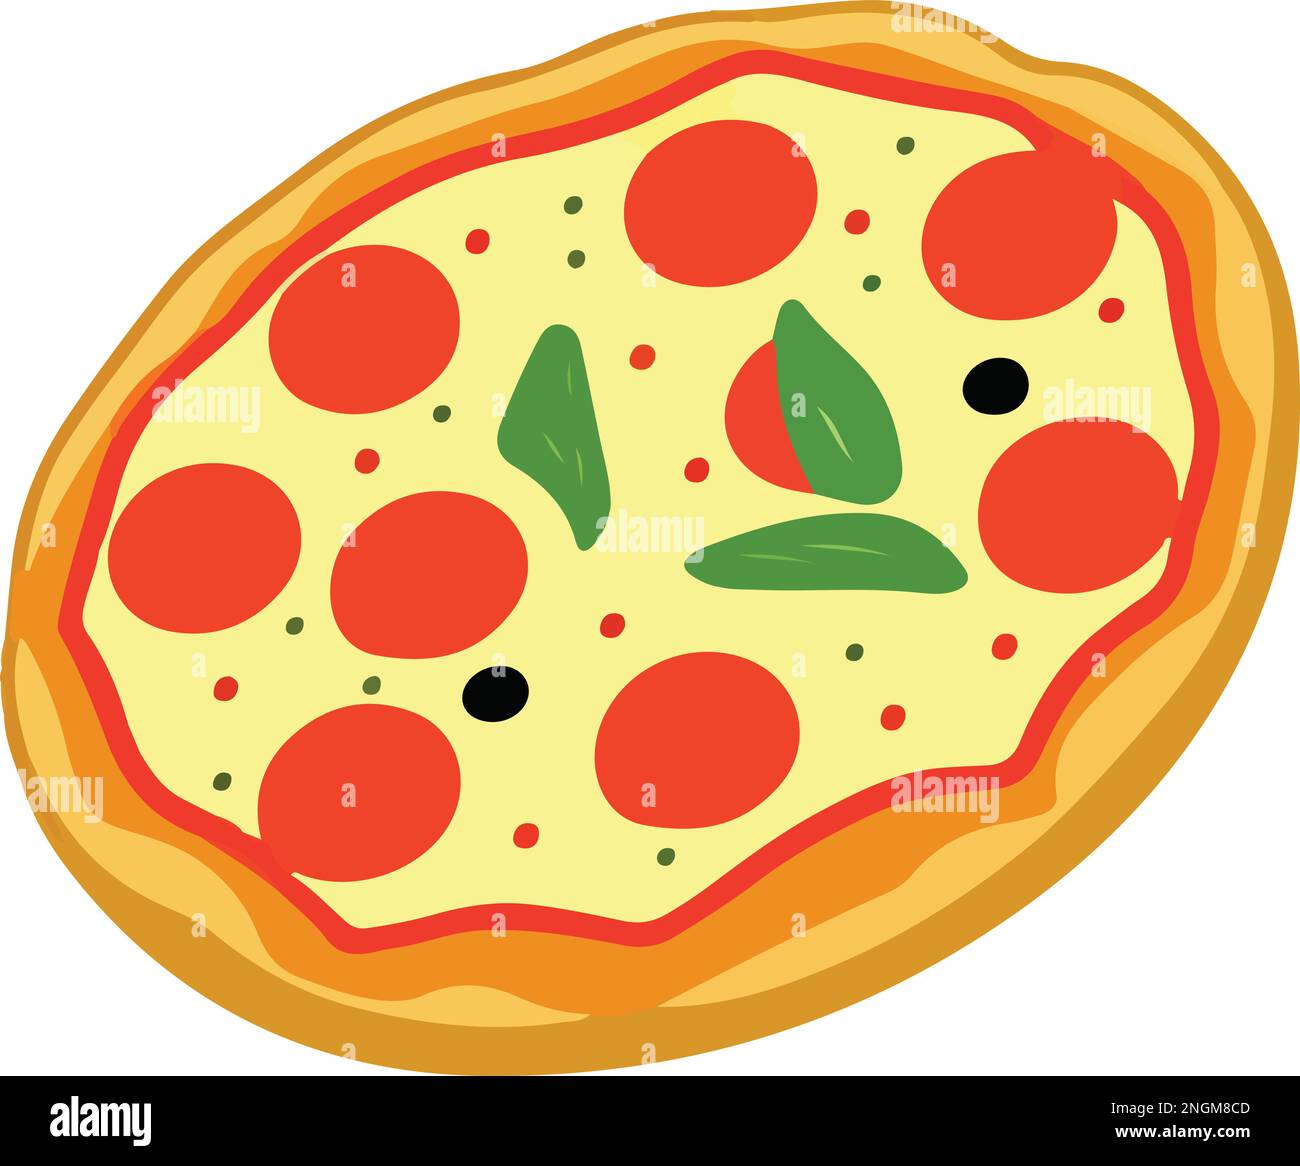 Delicious Pizza with Tomato and Mozzarella. Vector Illustration Stock ...